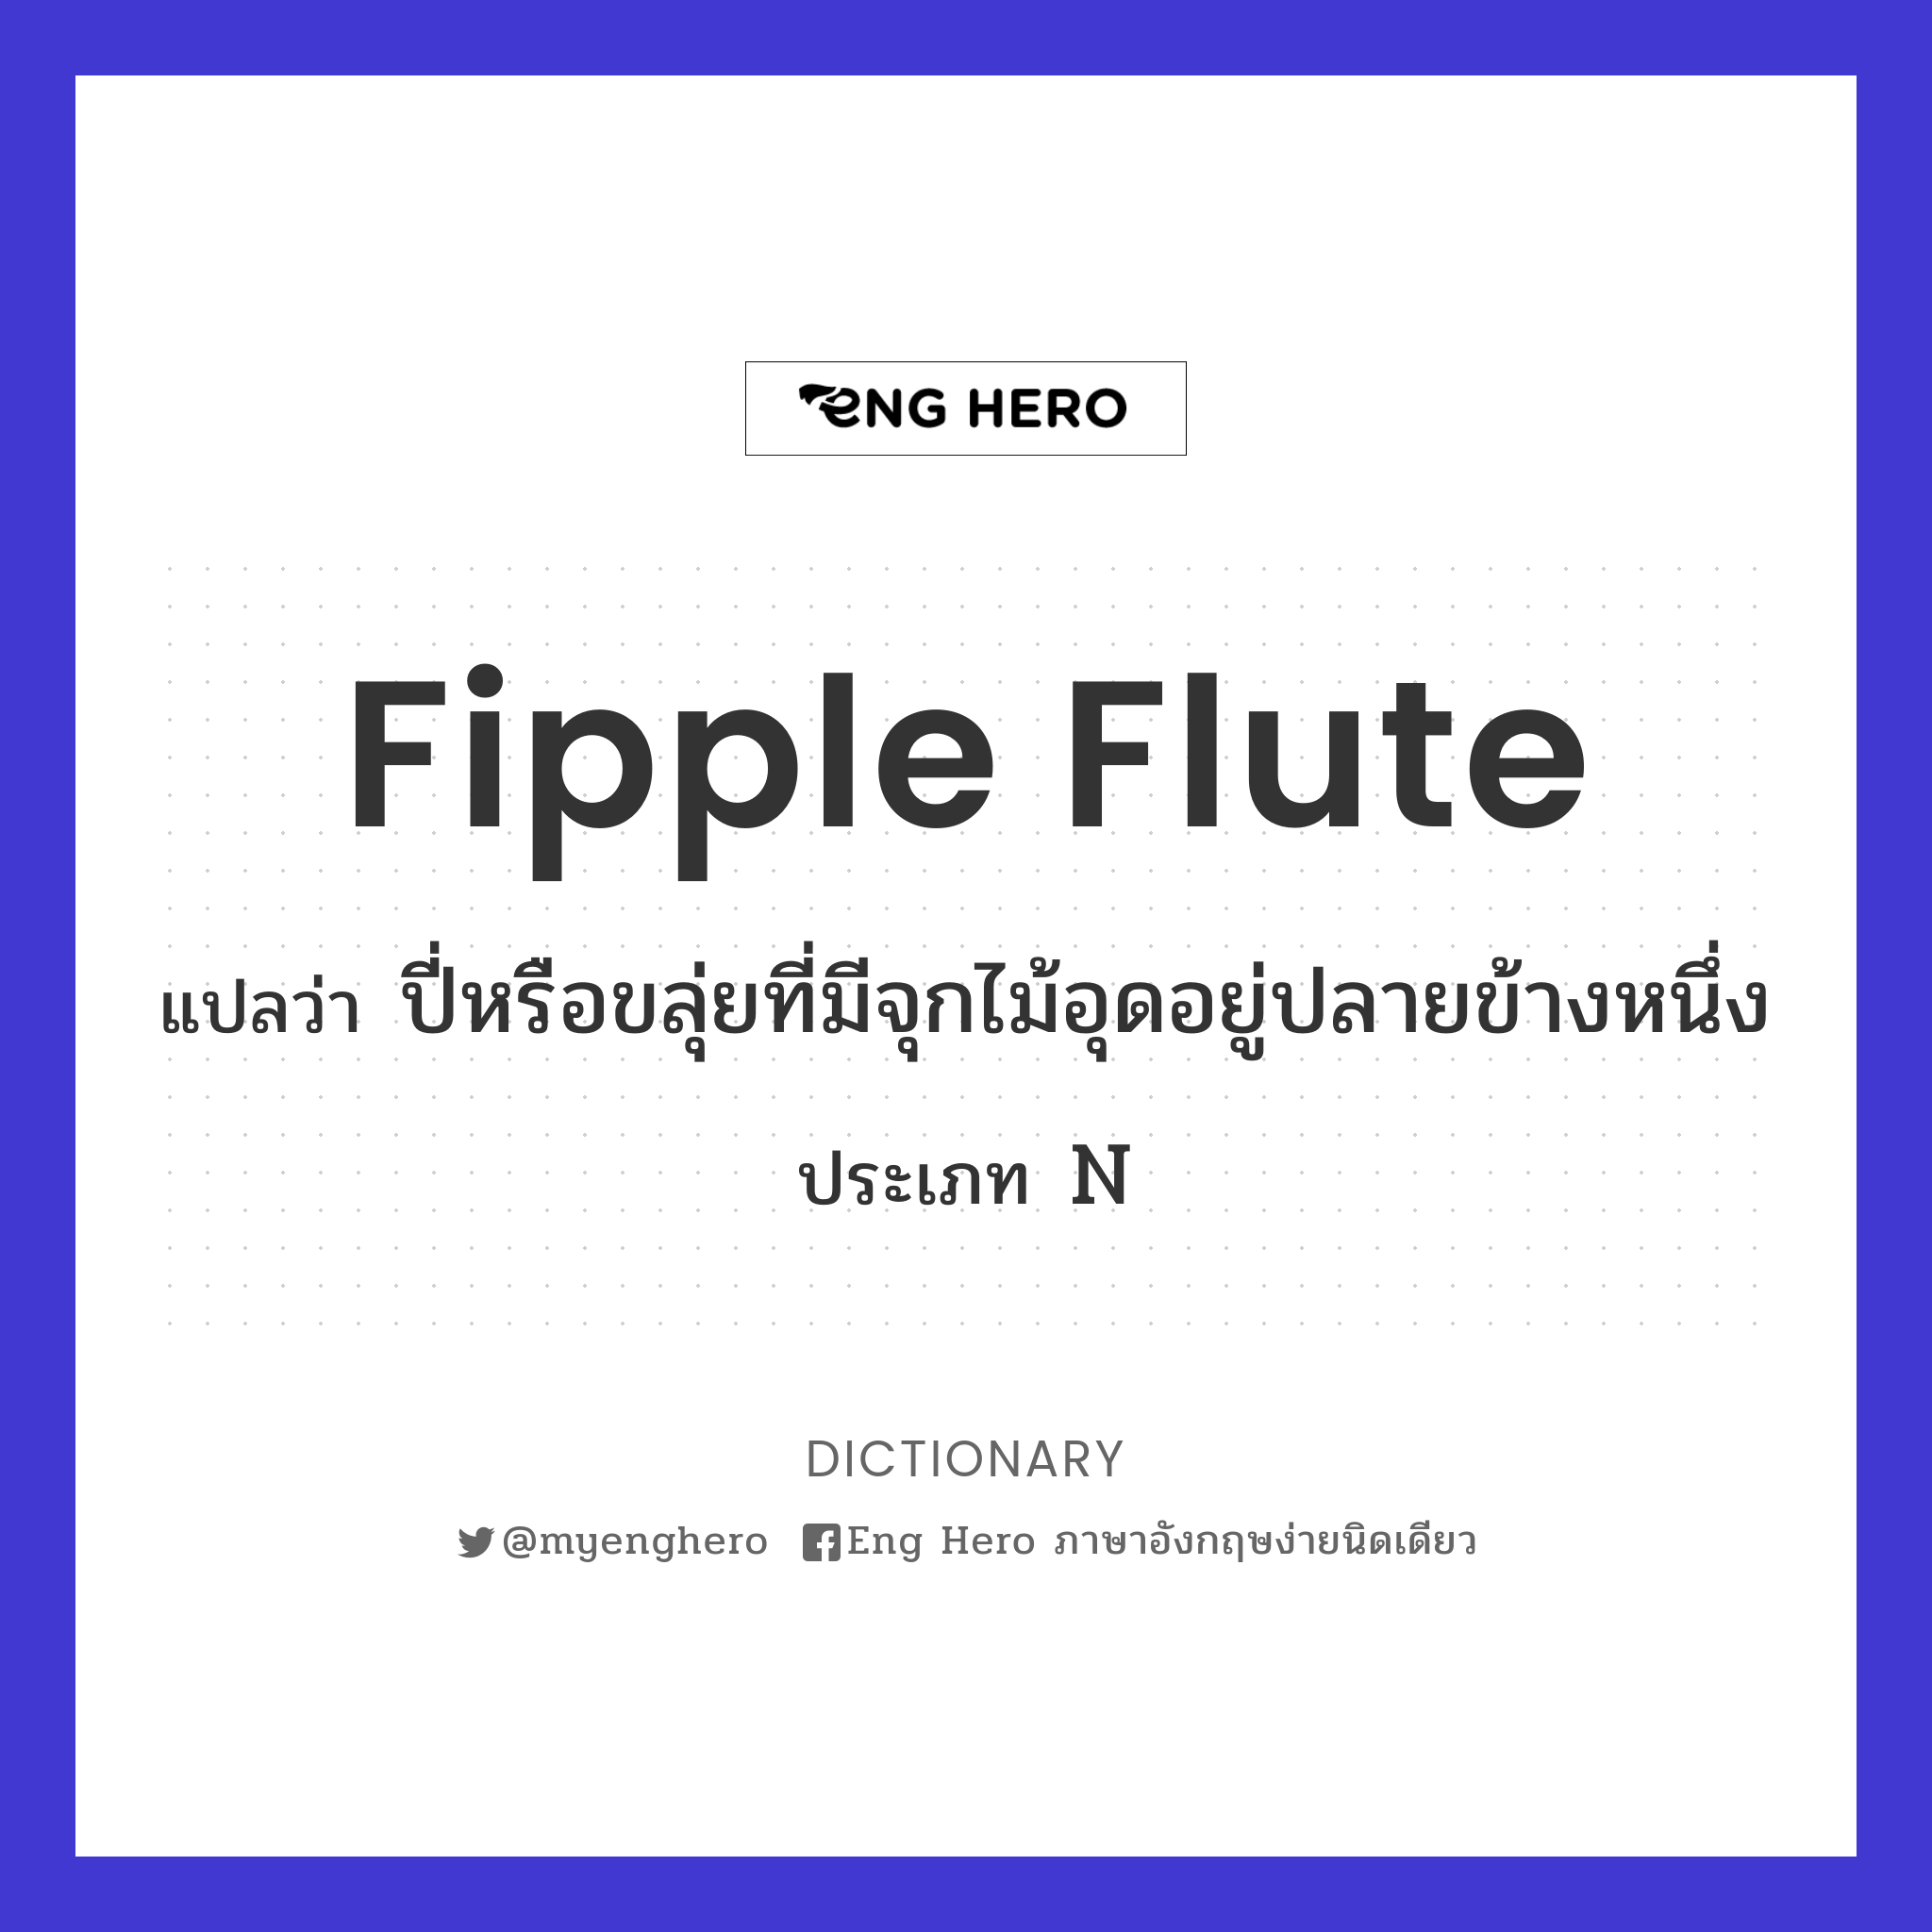 fipple flute